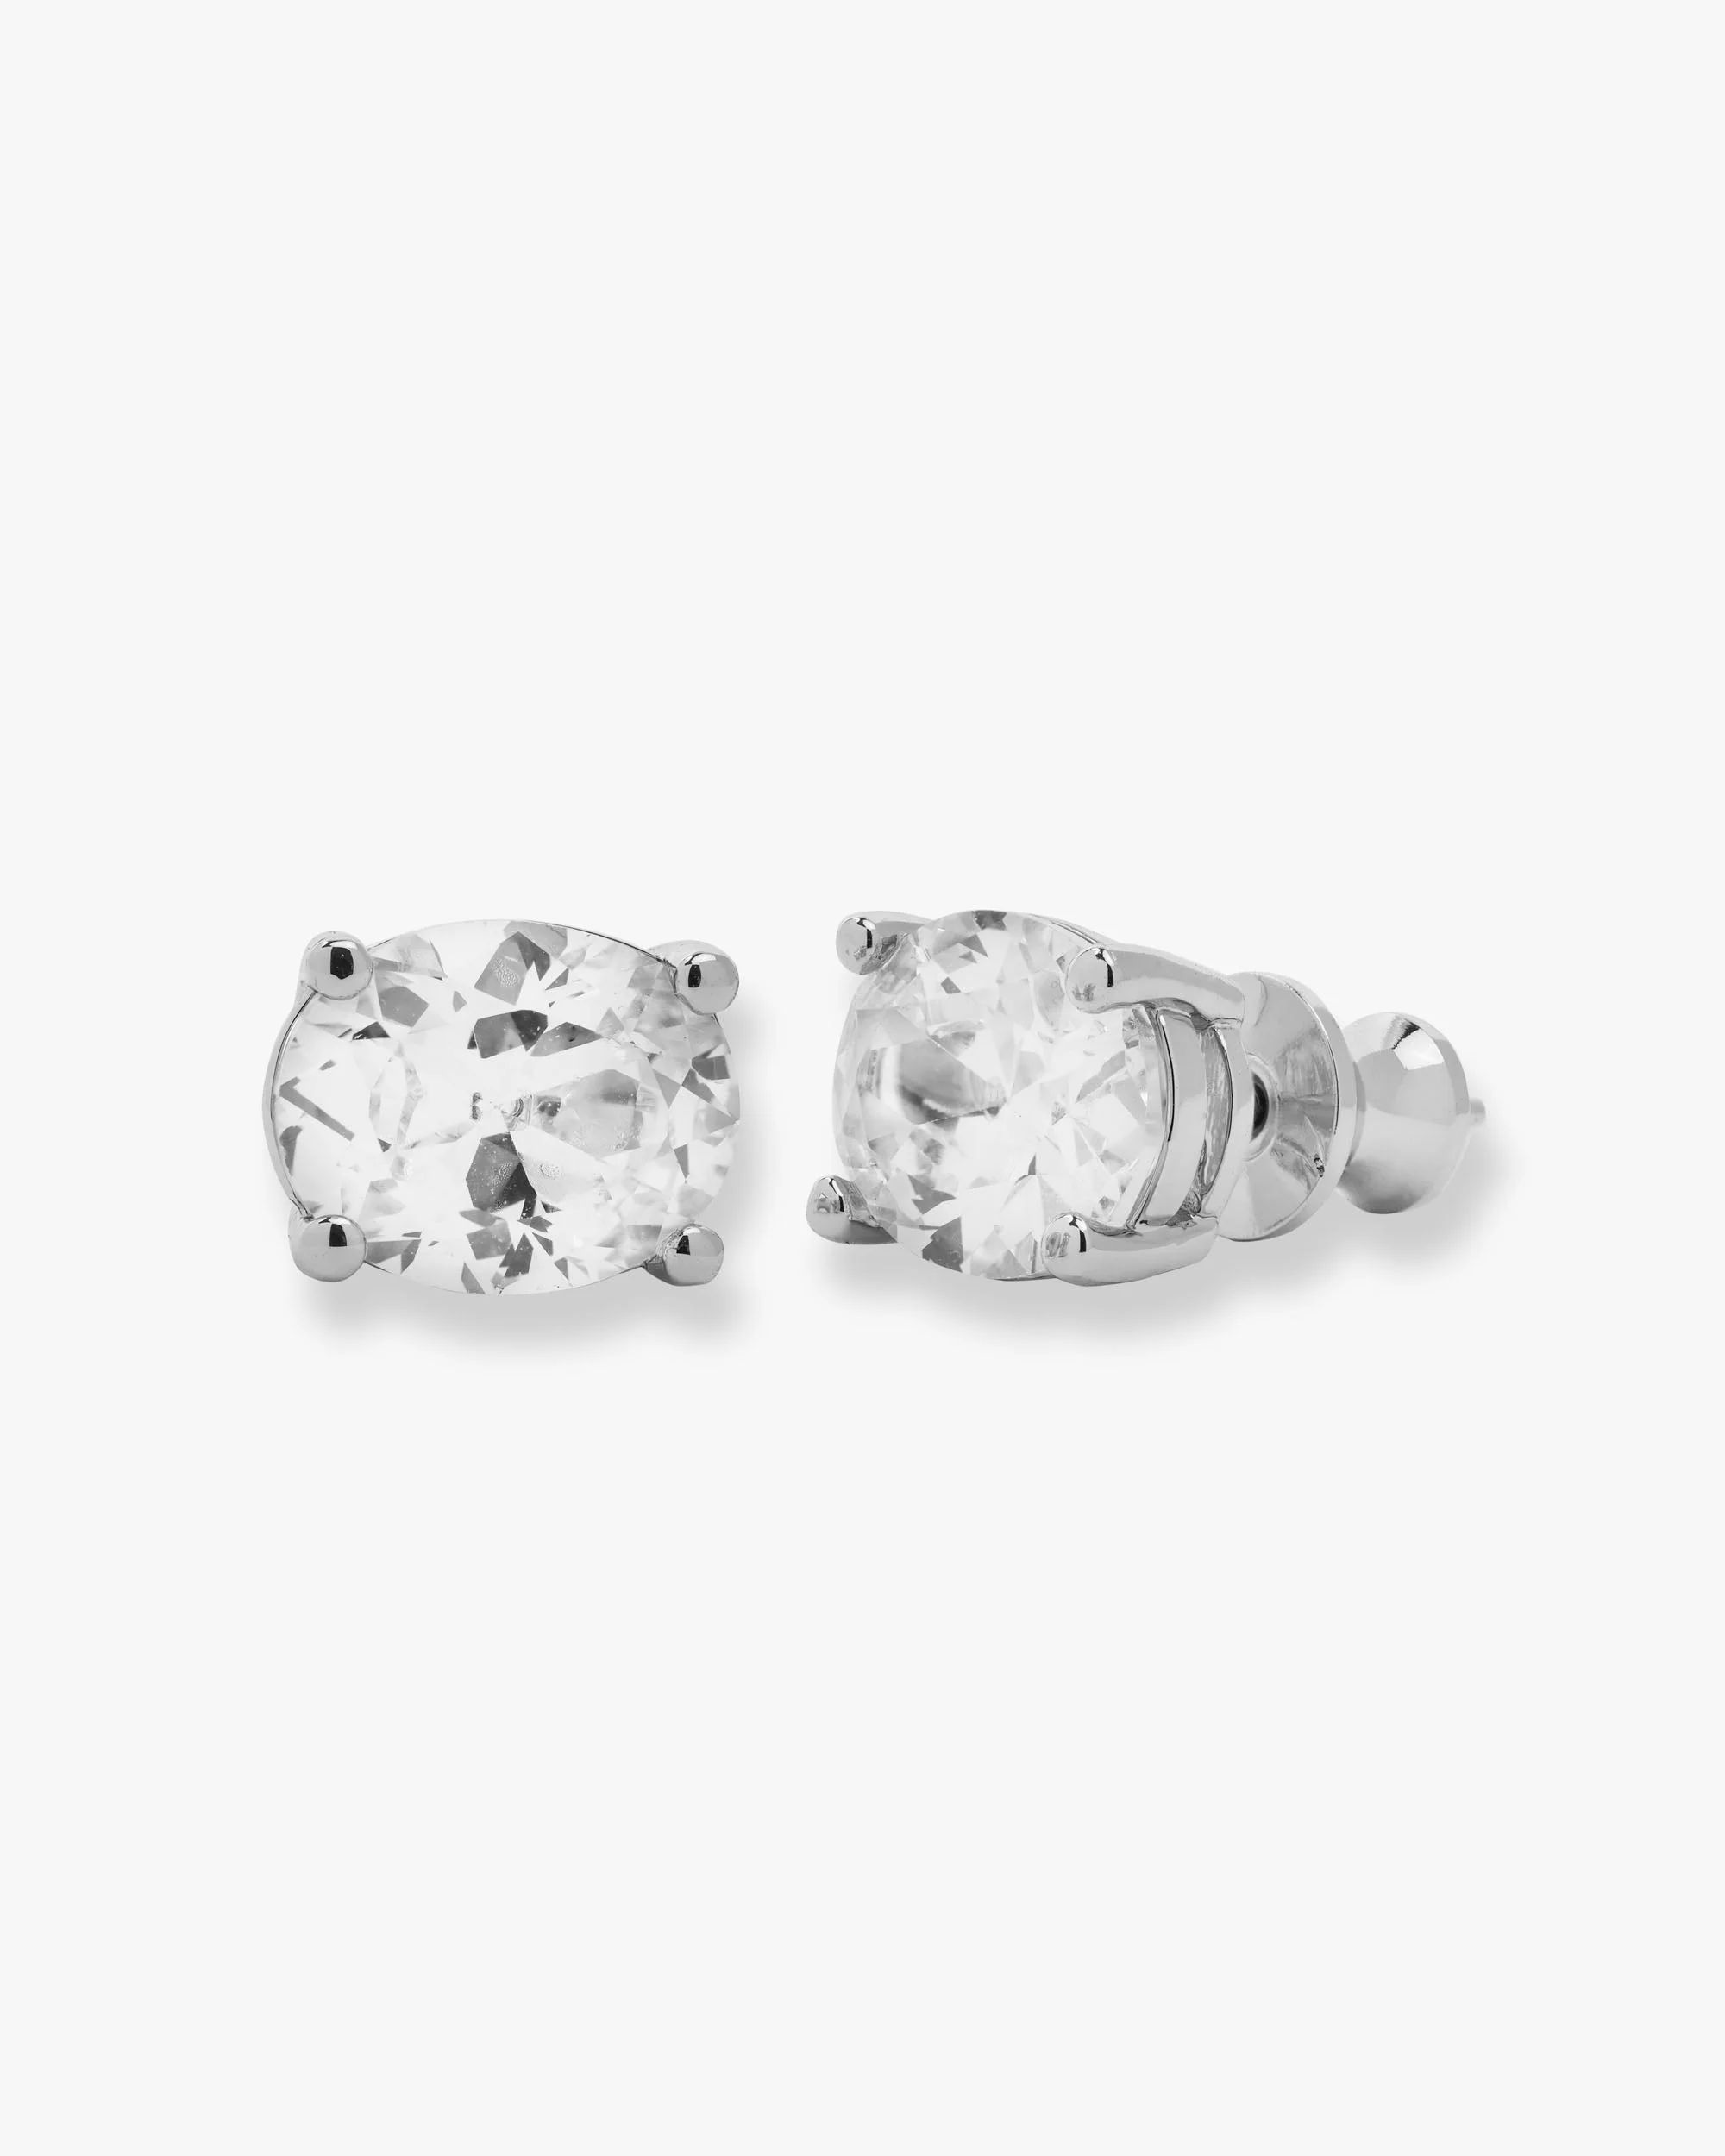 Hello Gorgeous Stud Earrings - Silver|White Diamondettes | Melinda Maria